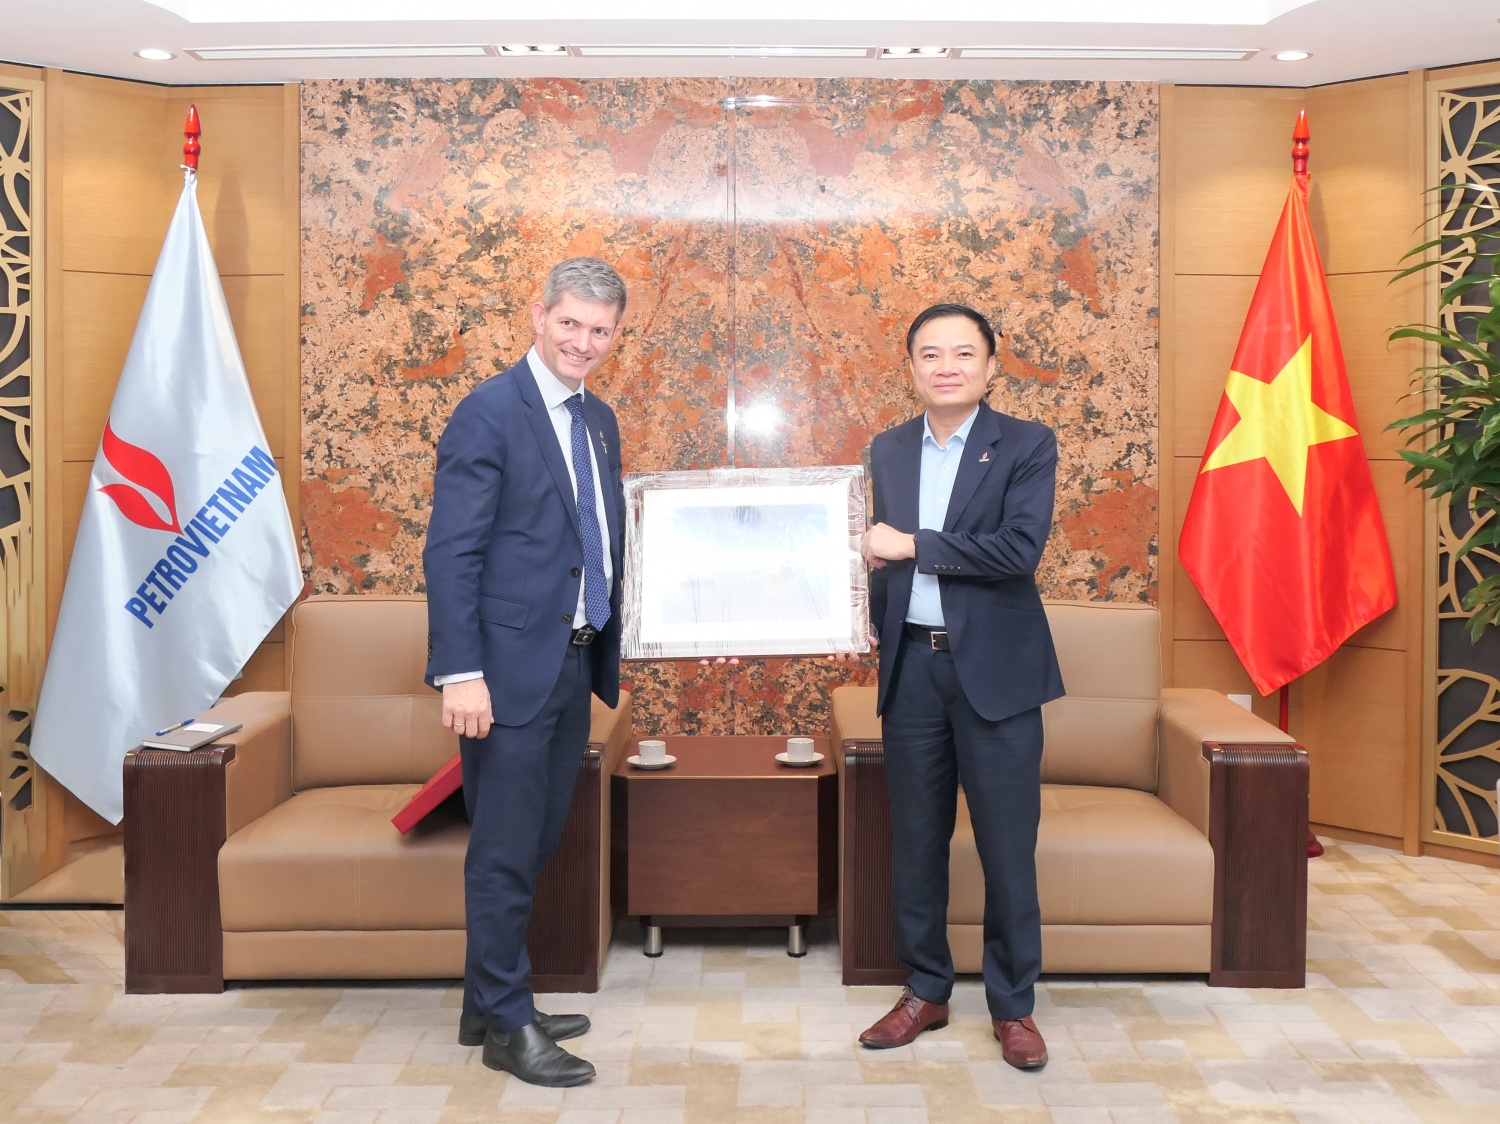 Tổng Giám đốc Lê Ngọc Sơn cùng ông Jacques – Etienne Michel - Giám đốc quốc gia Equinor tại Việt Nam